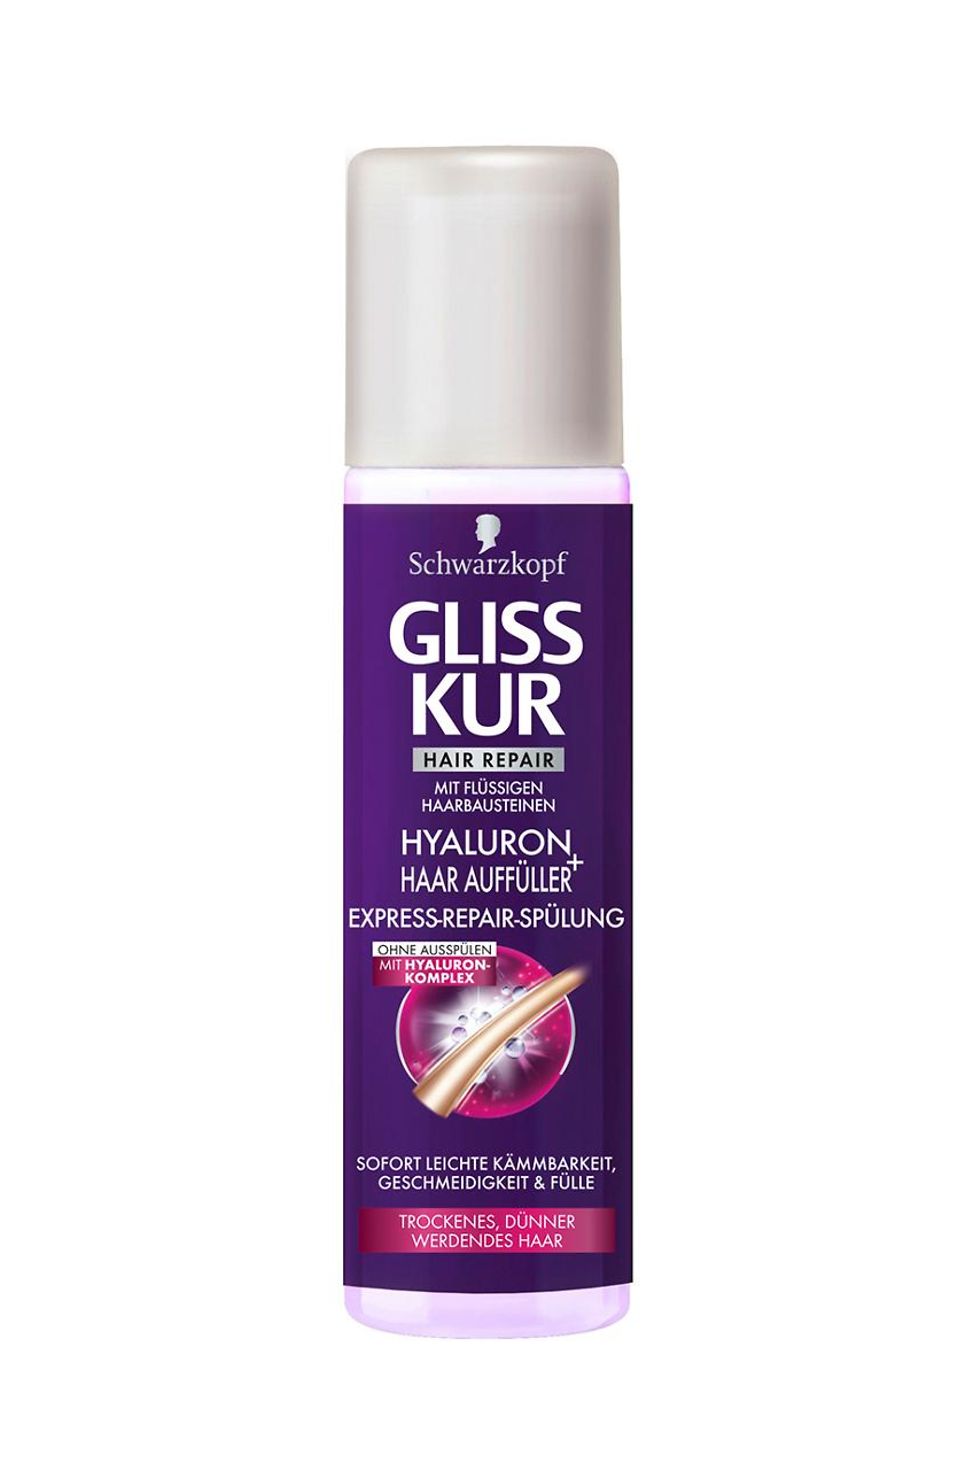 Gliss Kur Hyaluron + Haar Auffüller Express-Repair-Spülung